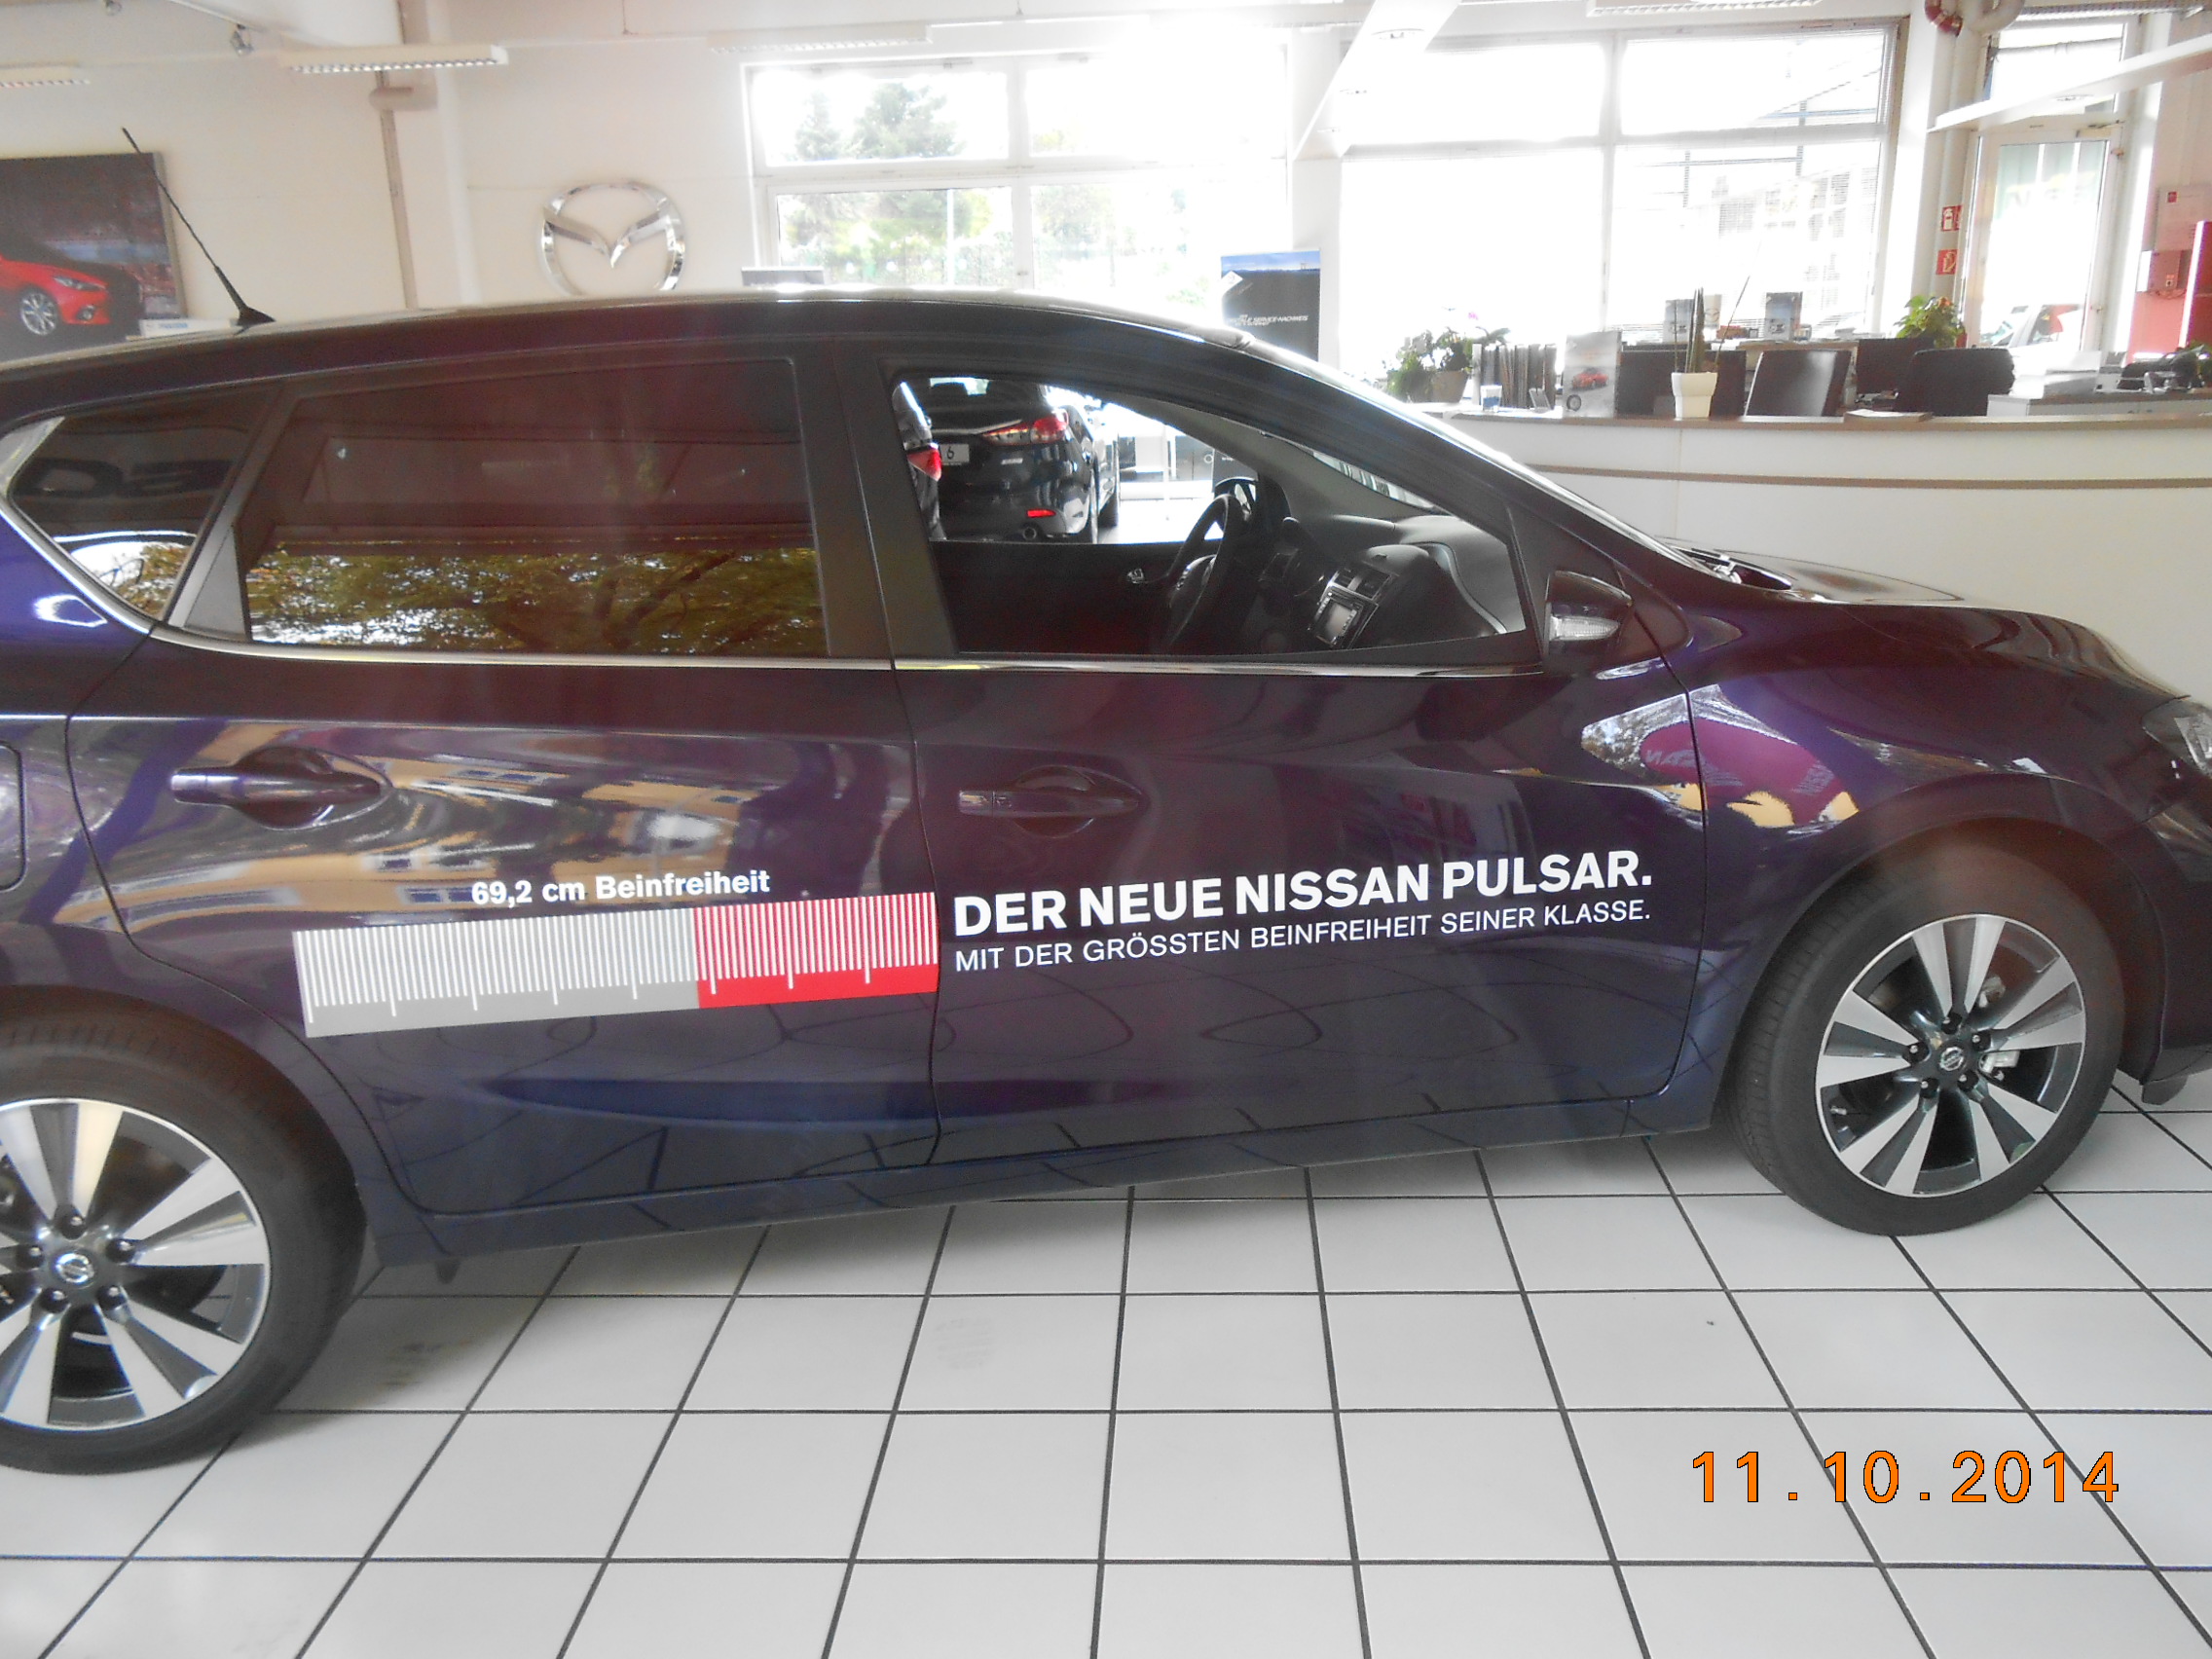 Der Neue Nissan - Pulsar!